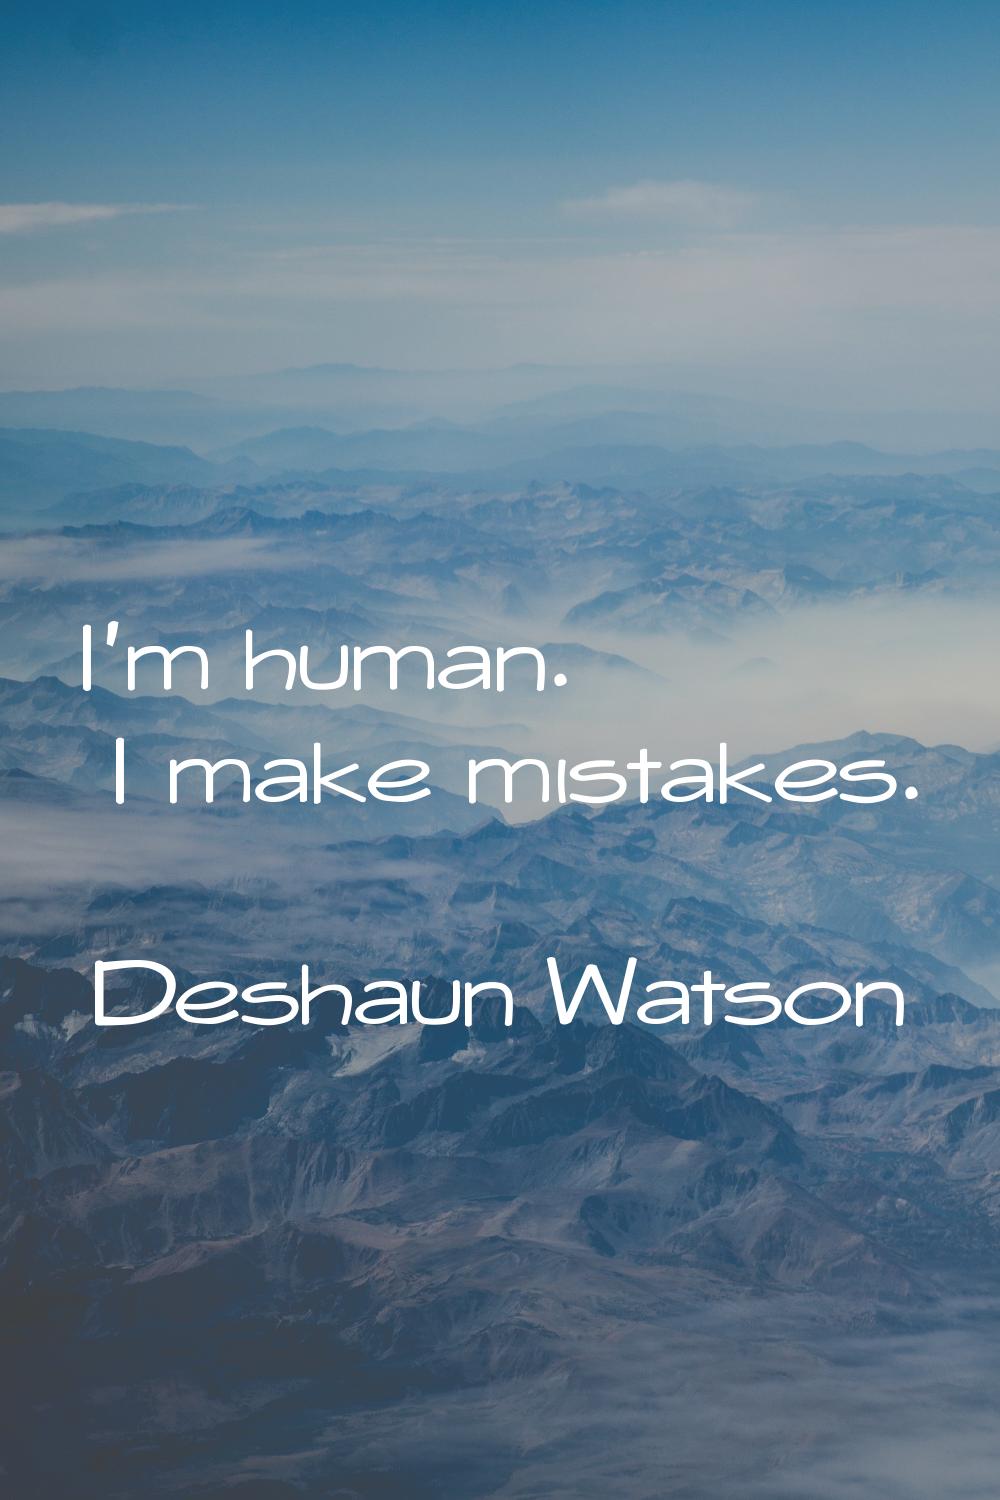 I'm human. I make mistakes.